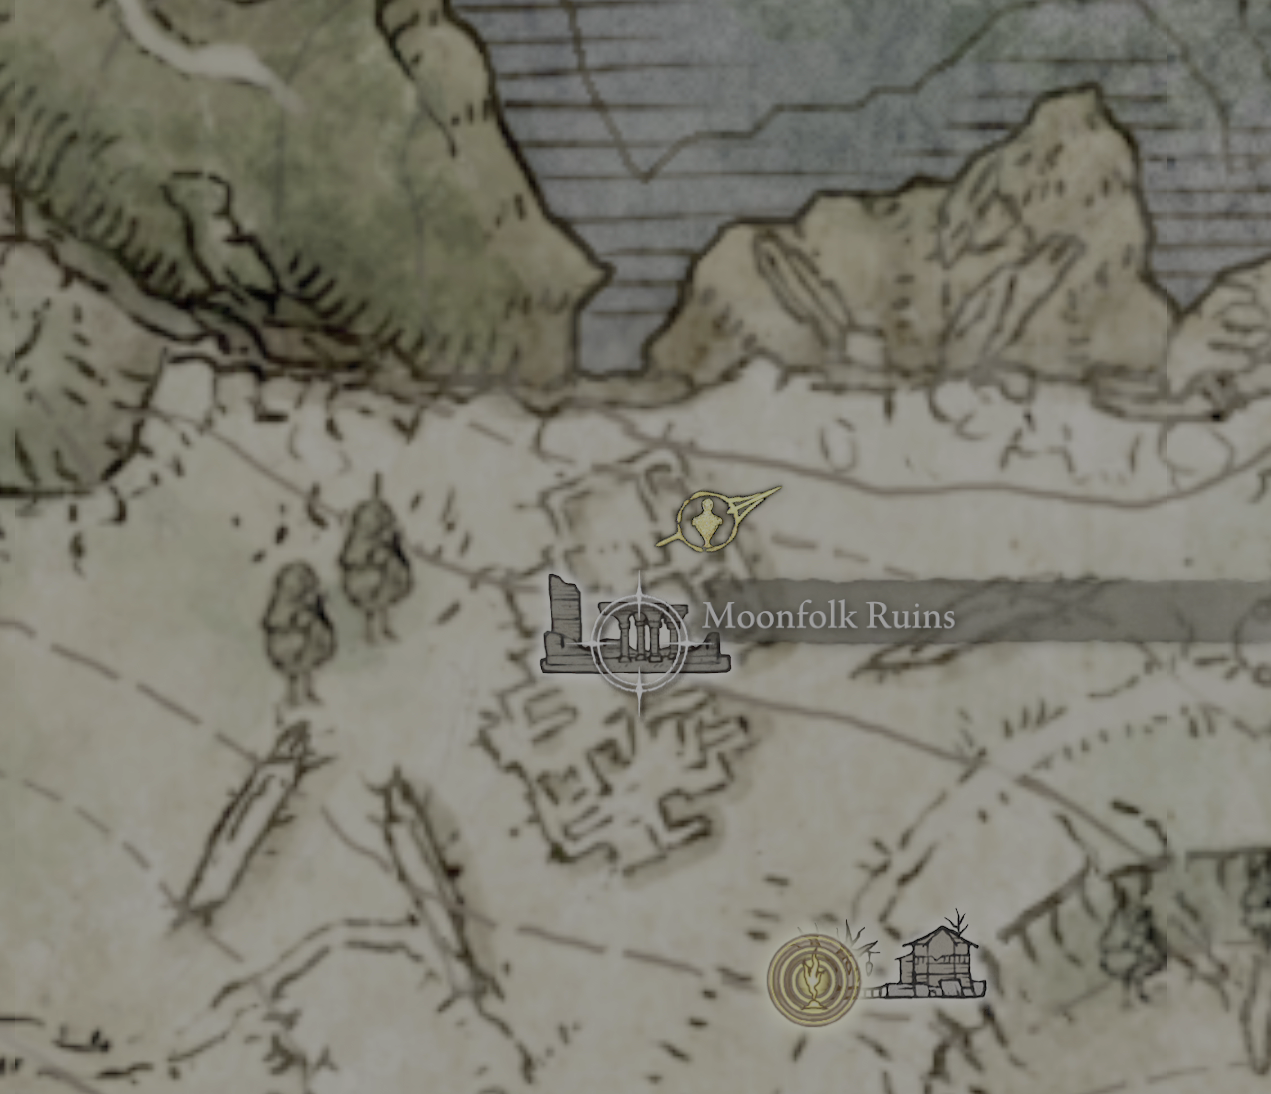 moonfolk ruins hidden floor map location